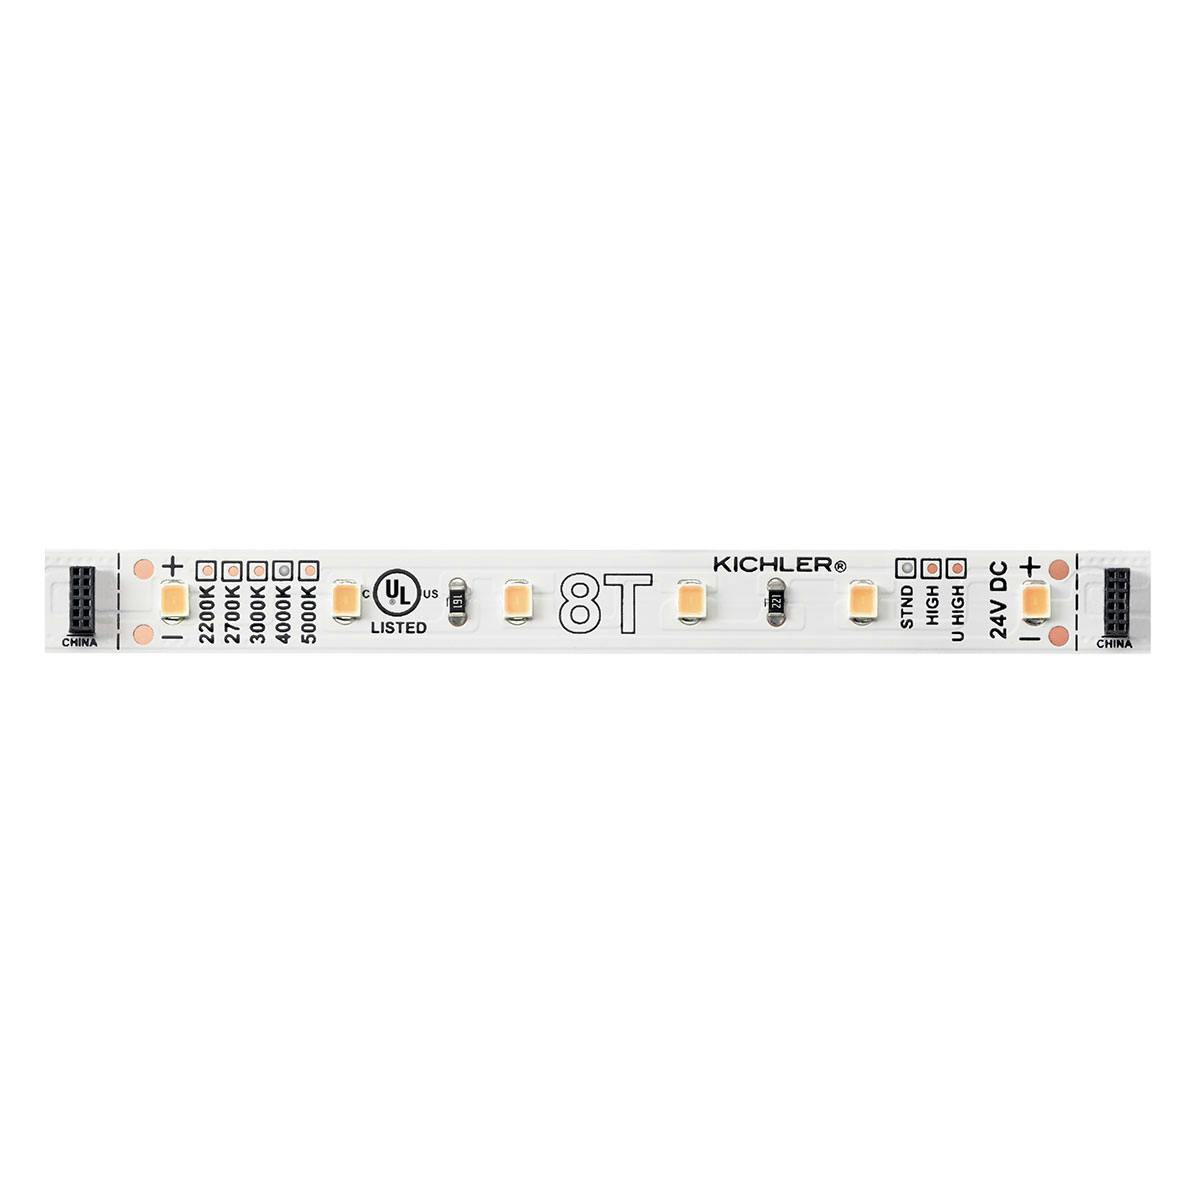 8T 4" 4000K 24V Standard LED Tape Light on a white background